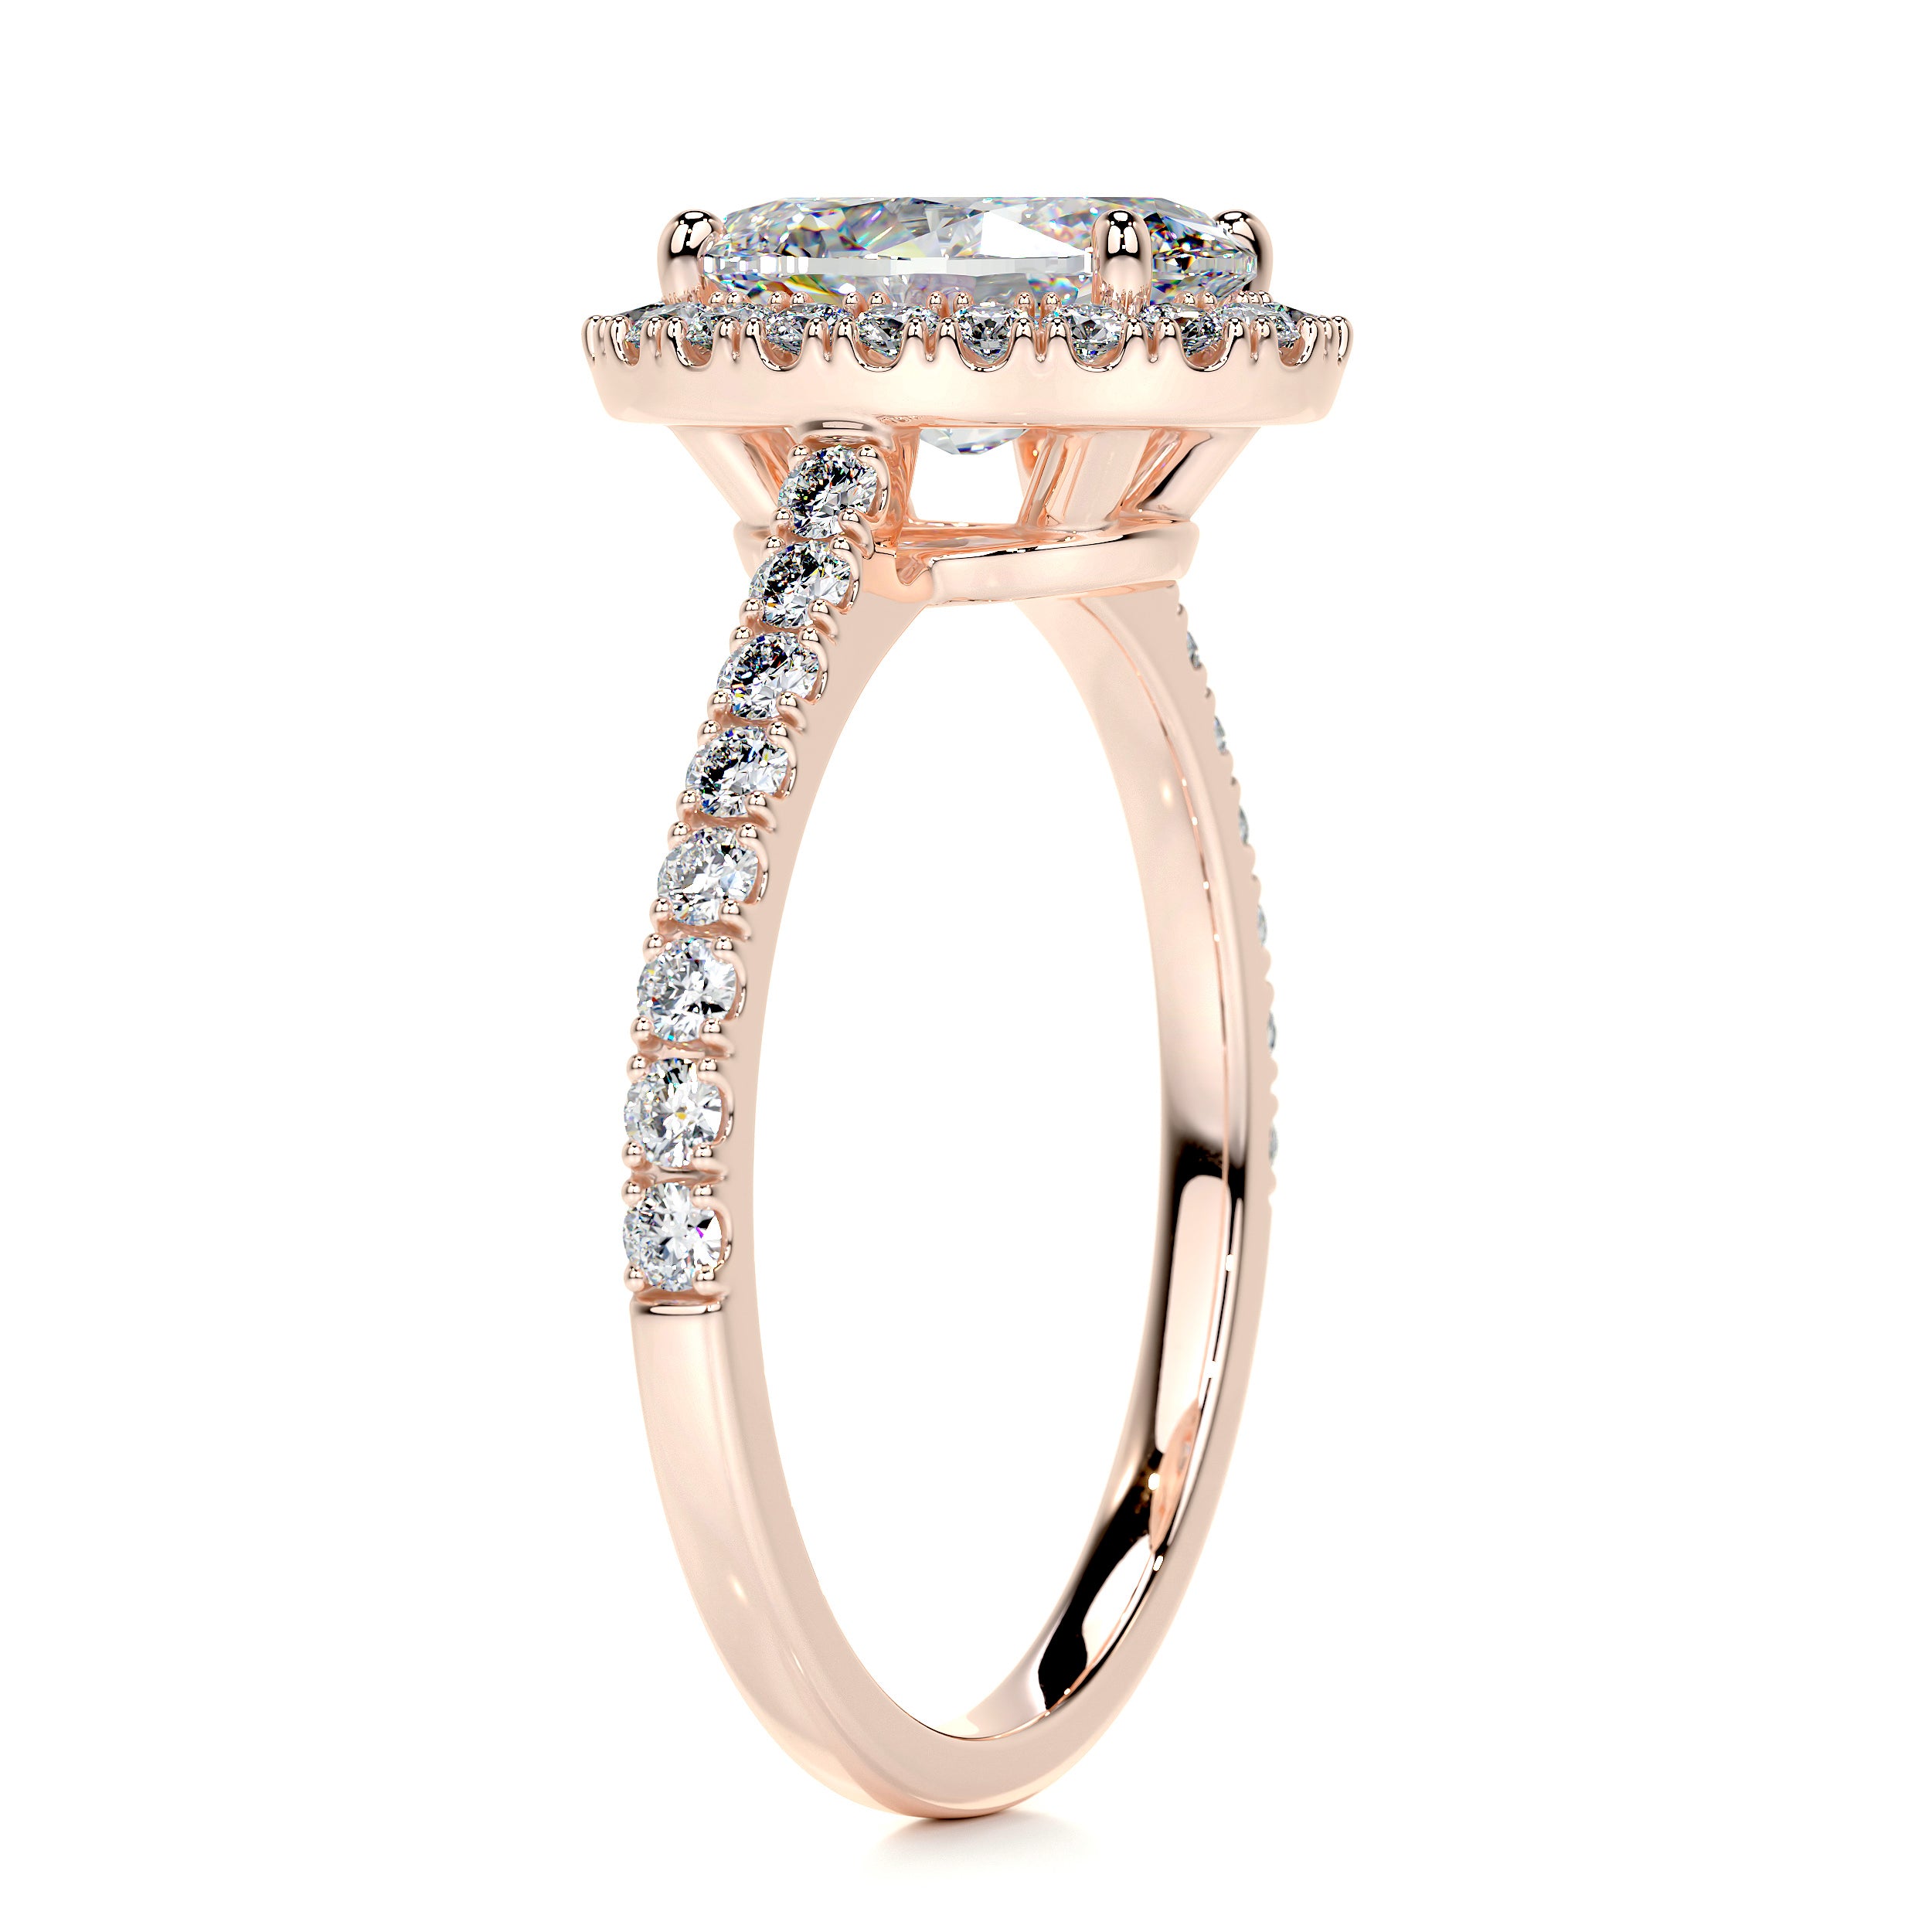 Maria Moissanite & Diamonds Ring   (2.65 Carat) -14K Rose Gold